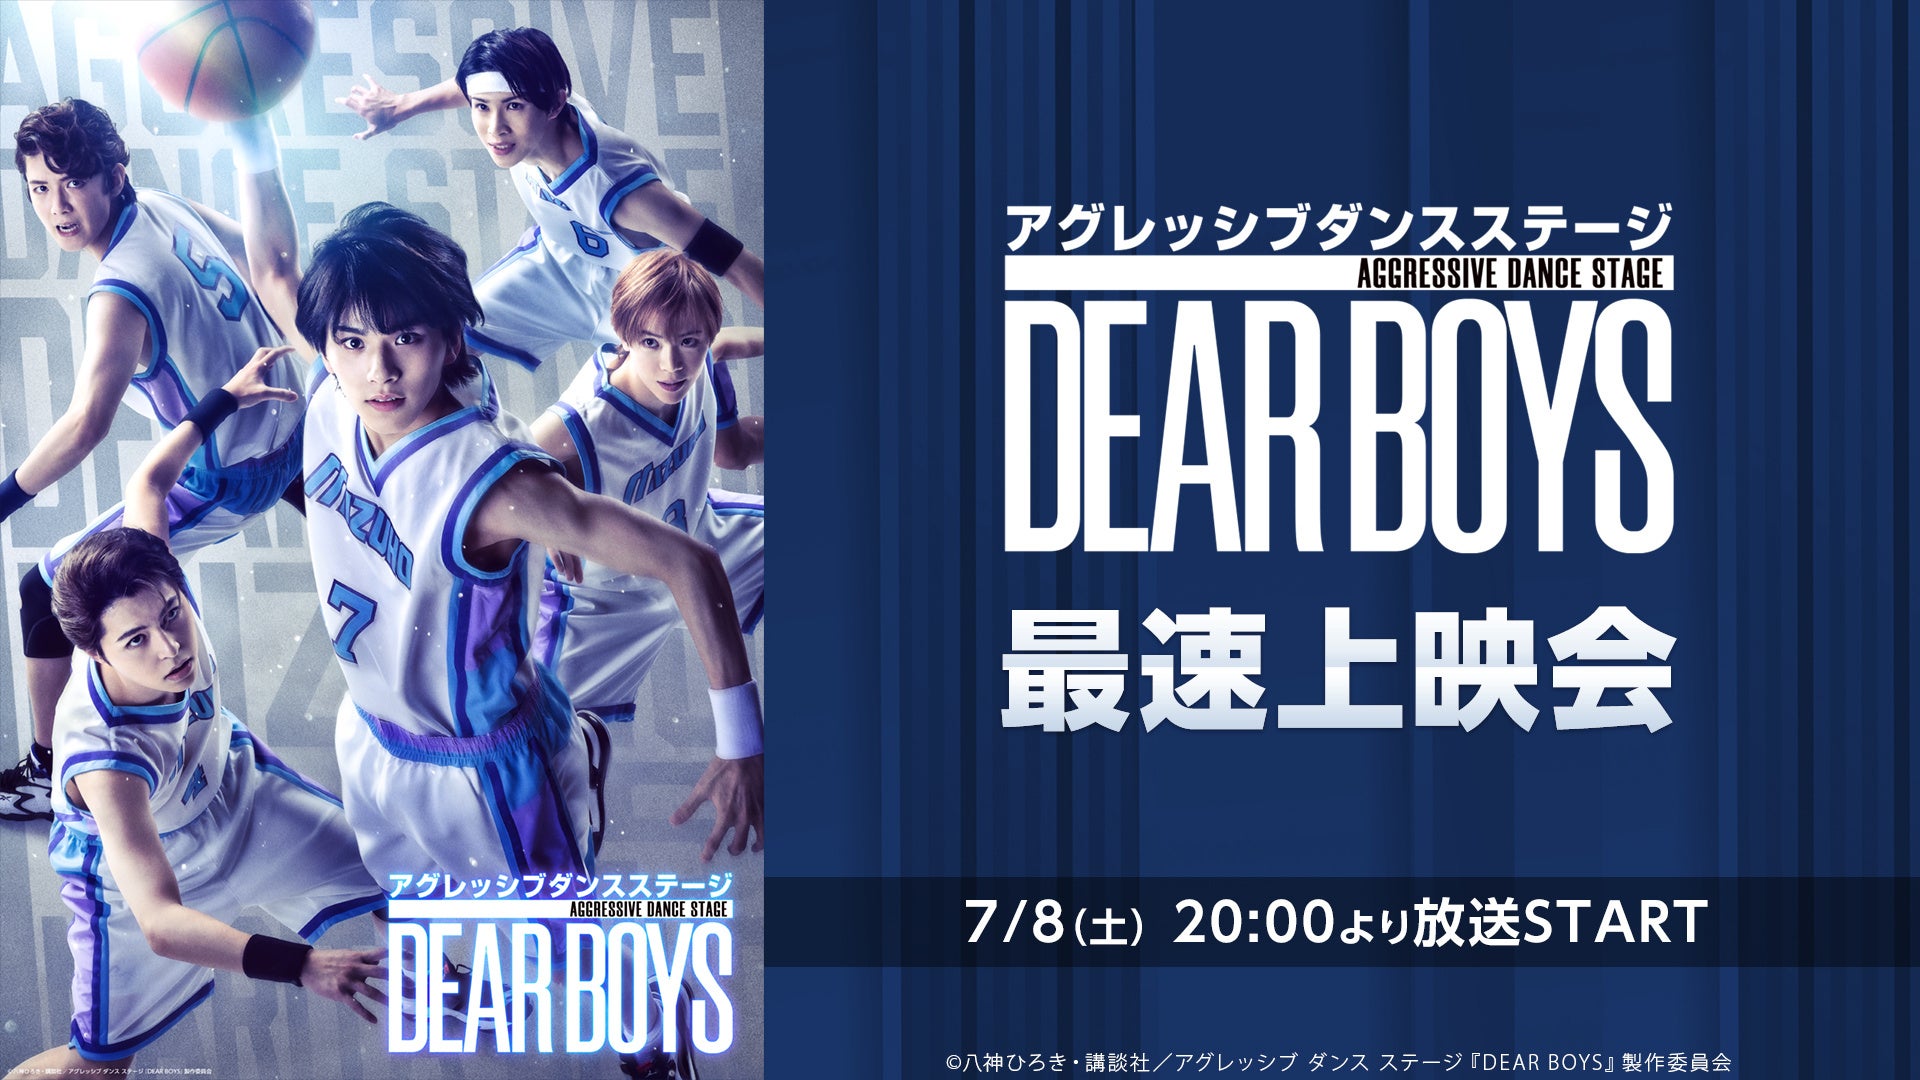 アグレッシブ ダンス ステージ『DEAR BOYS』最速上映会が、7/8(土) 20時よりニコニコ生放送にて開催決定